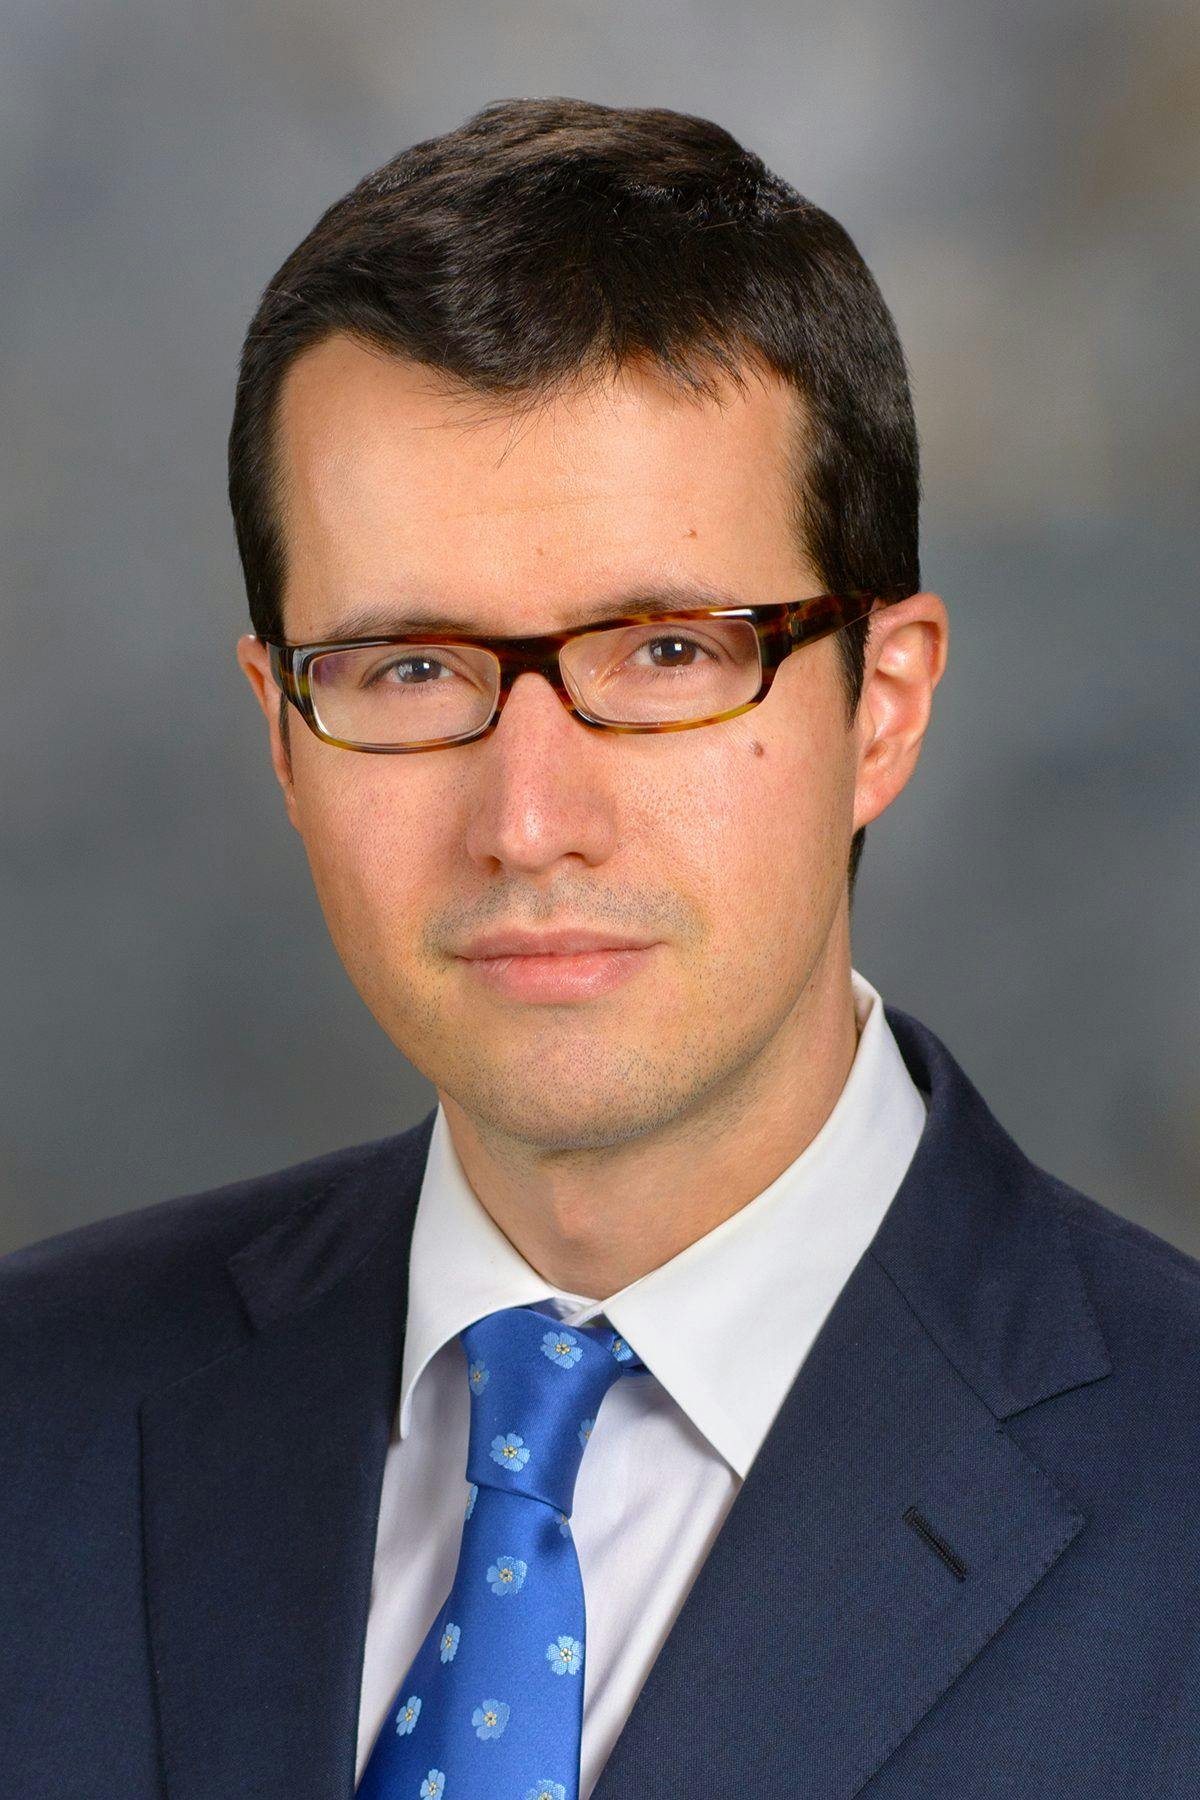 Ferdinandos Skoulidis, MD, PhD, MRCP